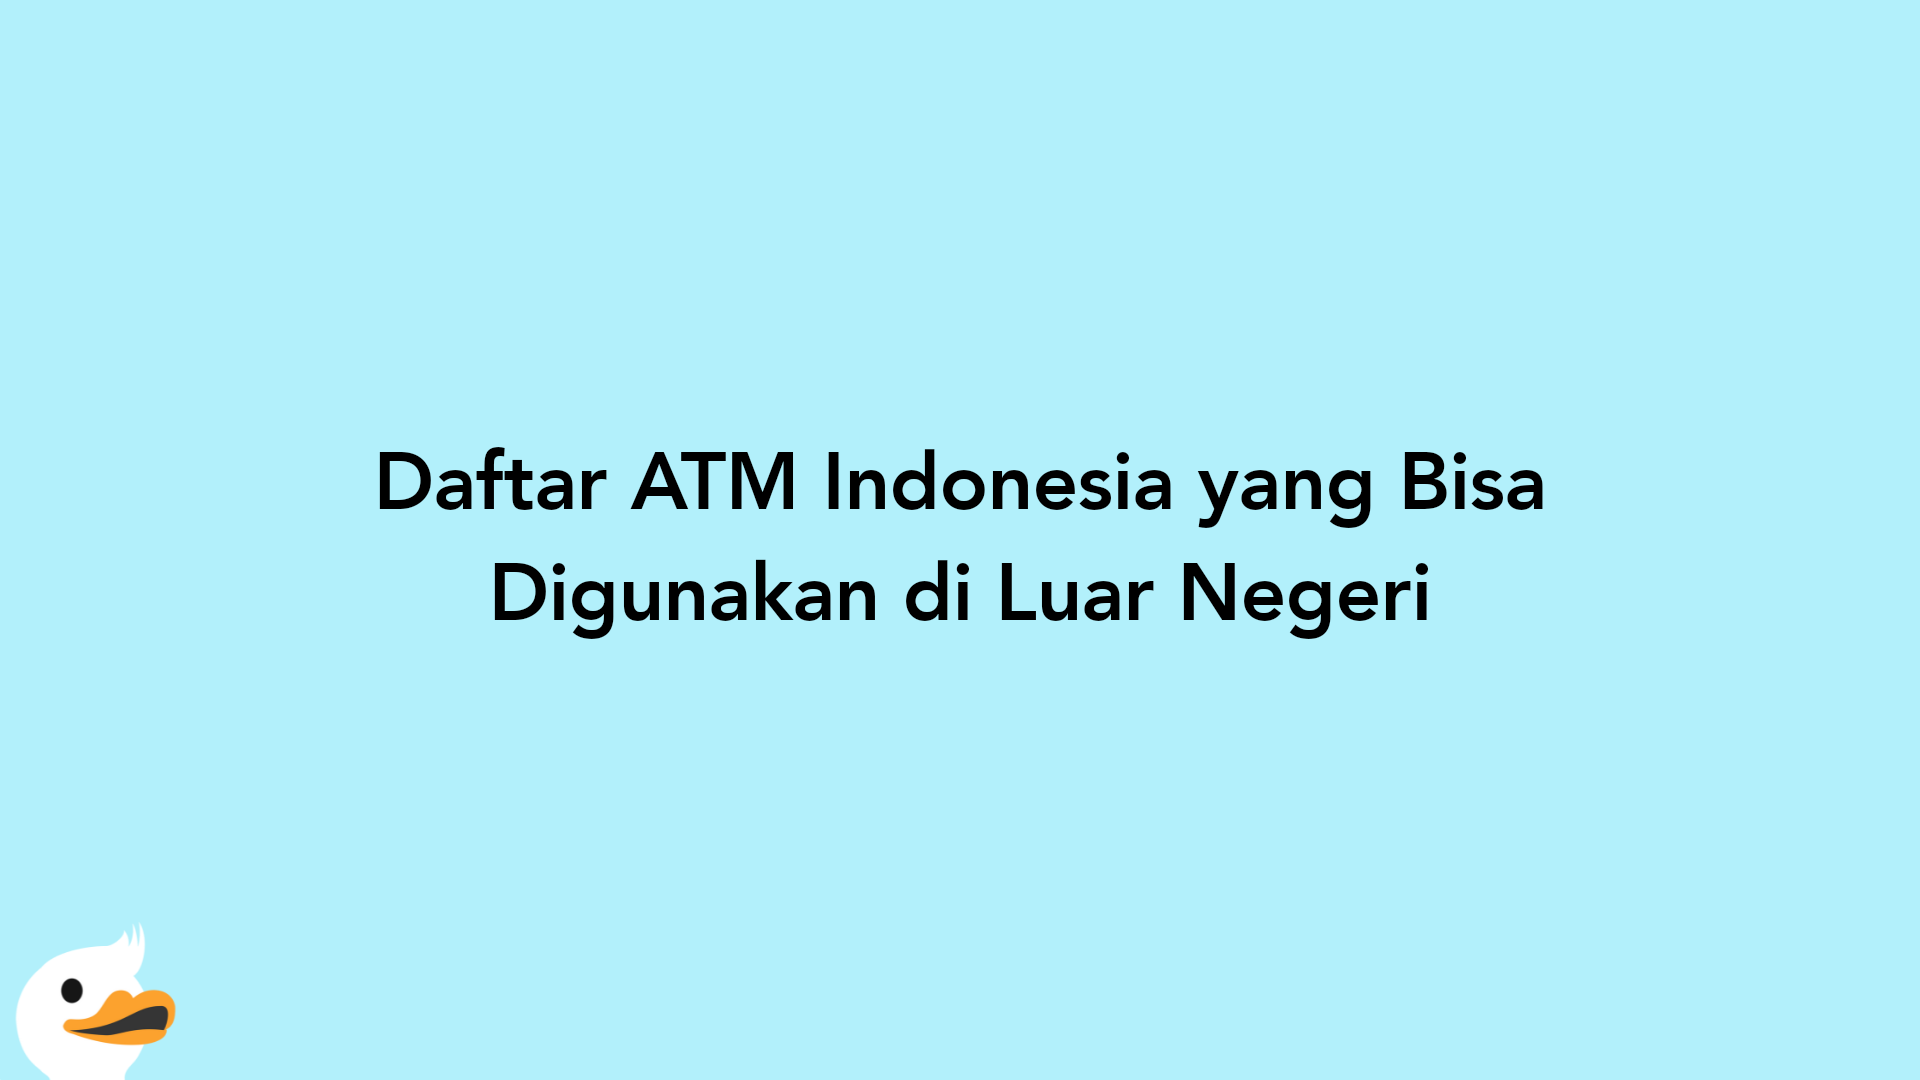 Daftar ATM Indonesia yang Bisa Digunakan di Luar Negeri